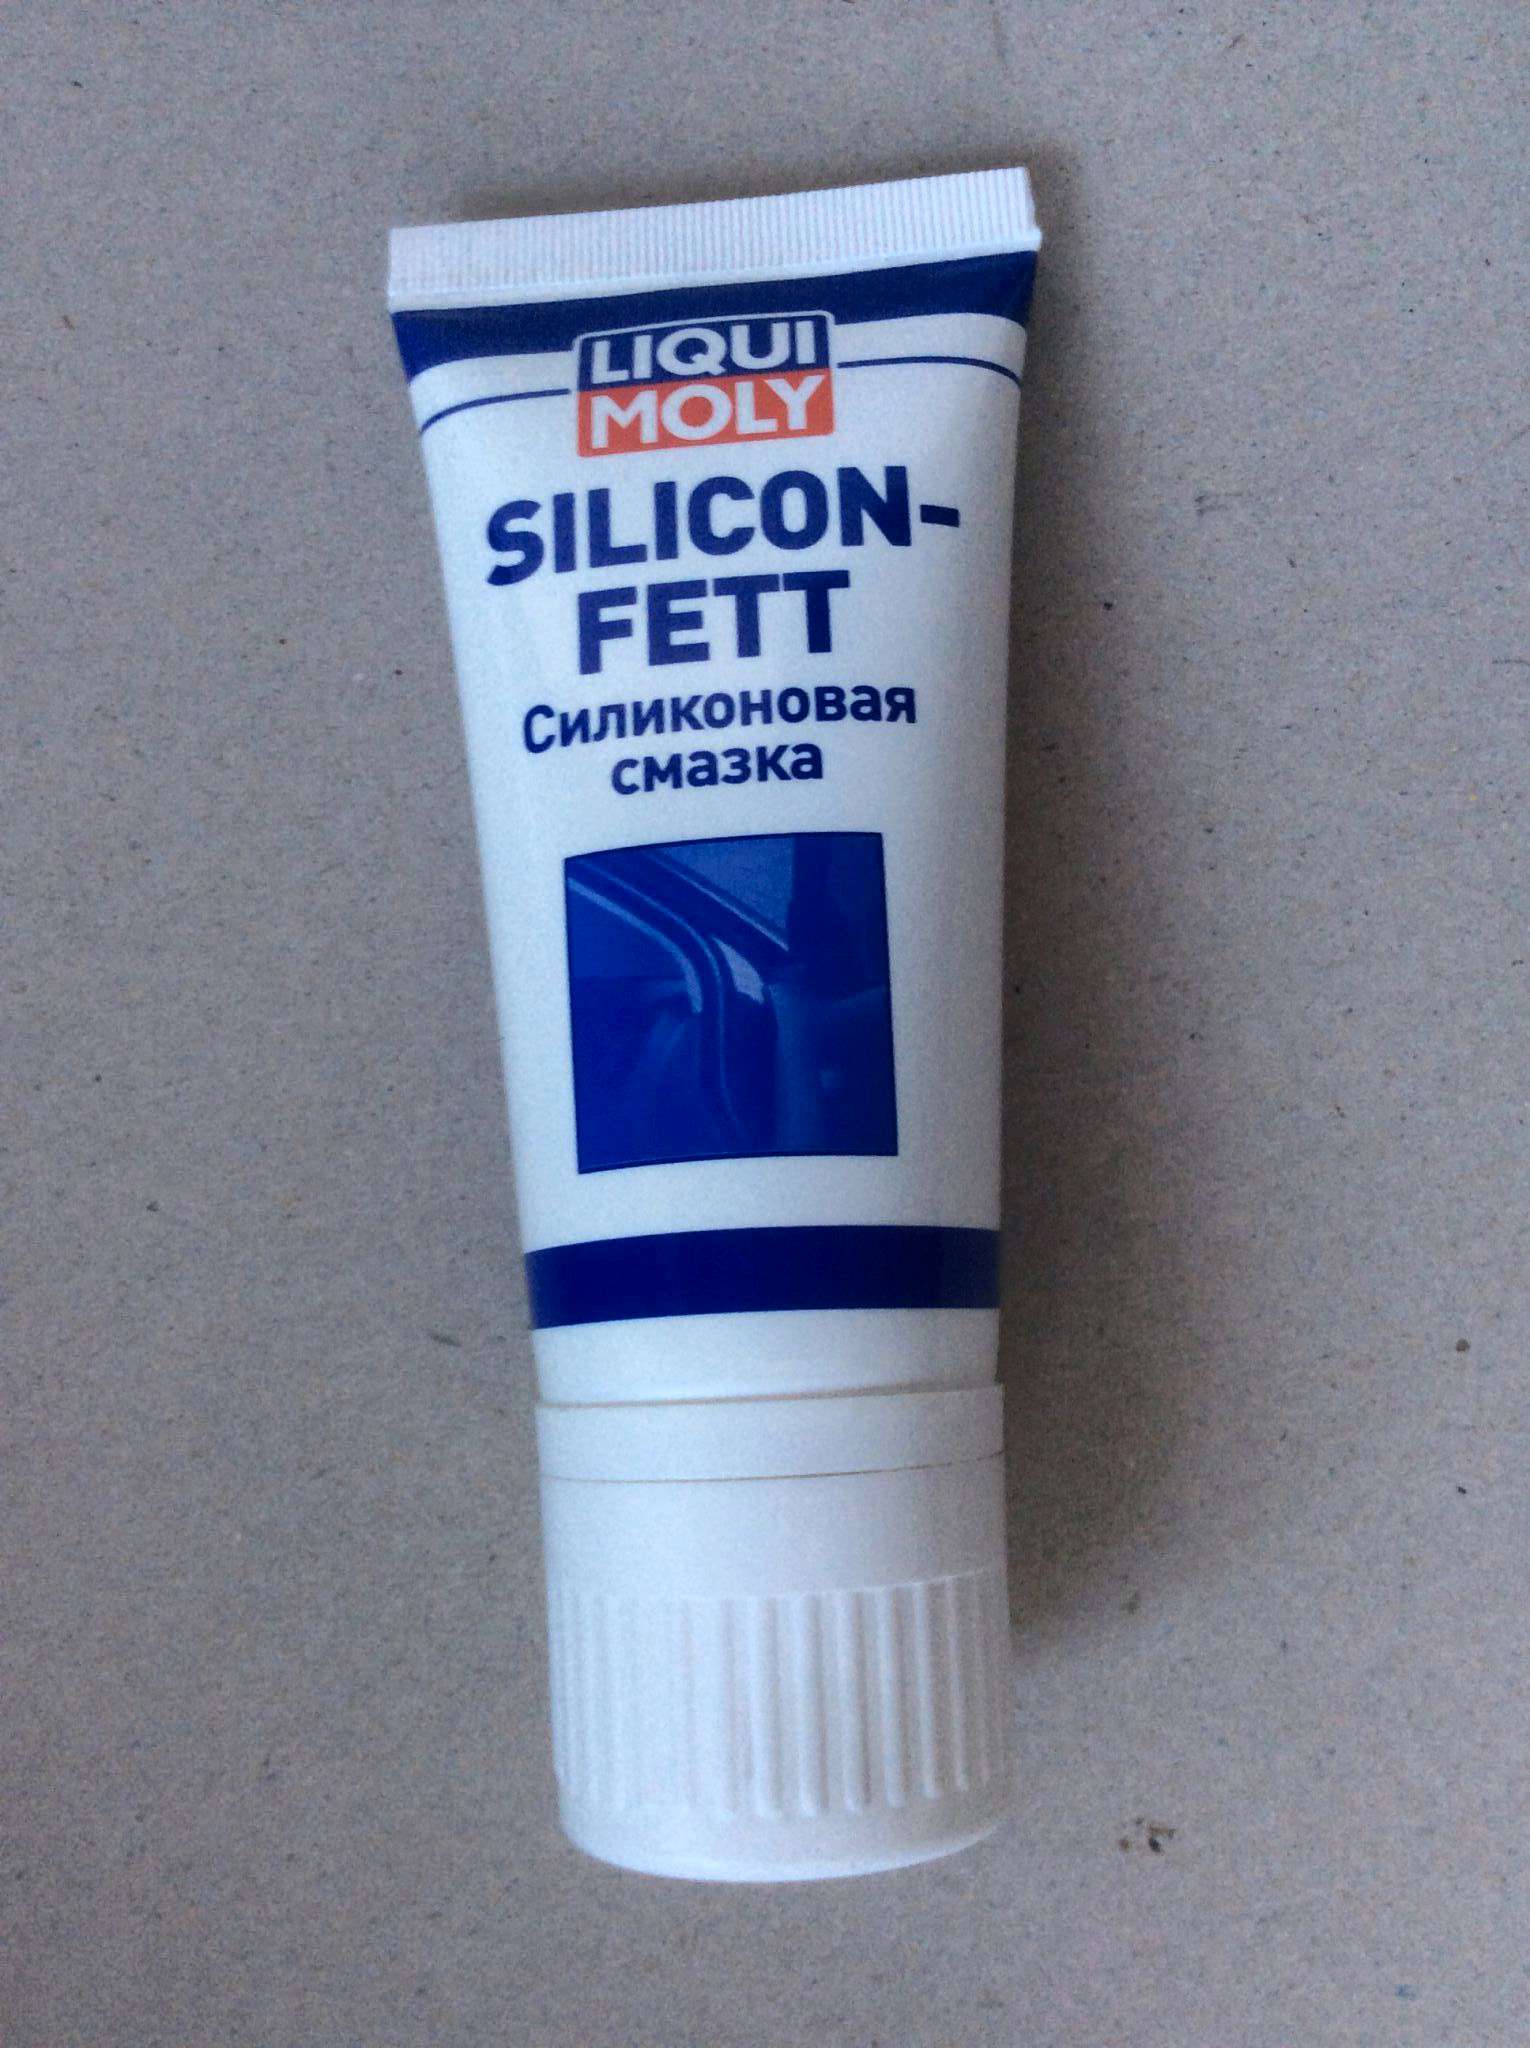 LIQUI MOLY Silicon Fett - для сальников, кинематических пар из пластика .